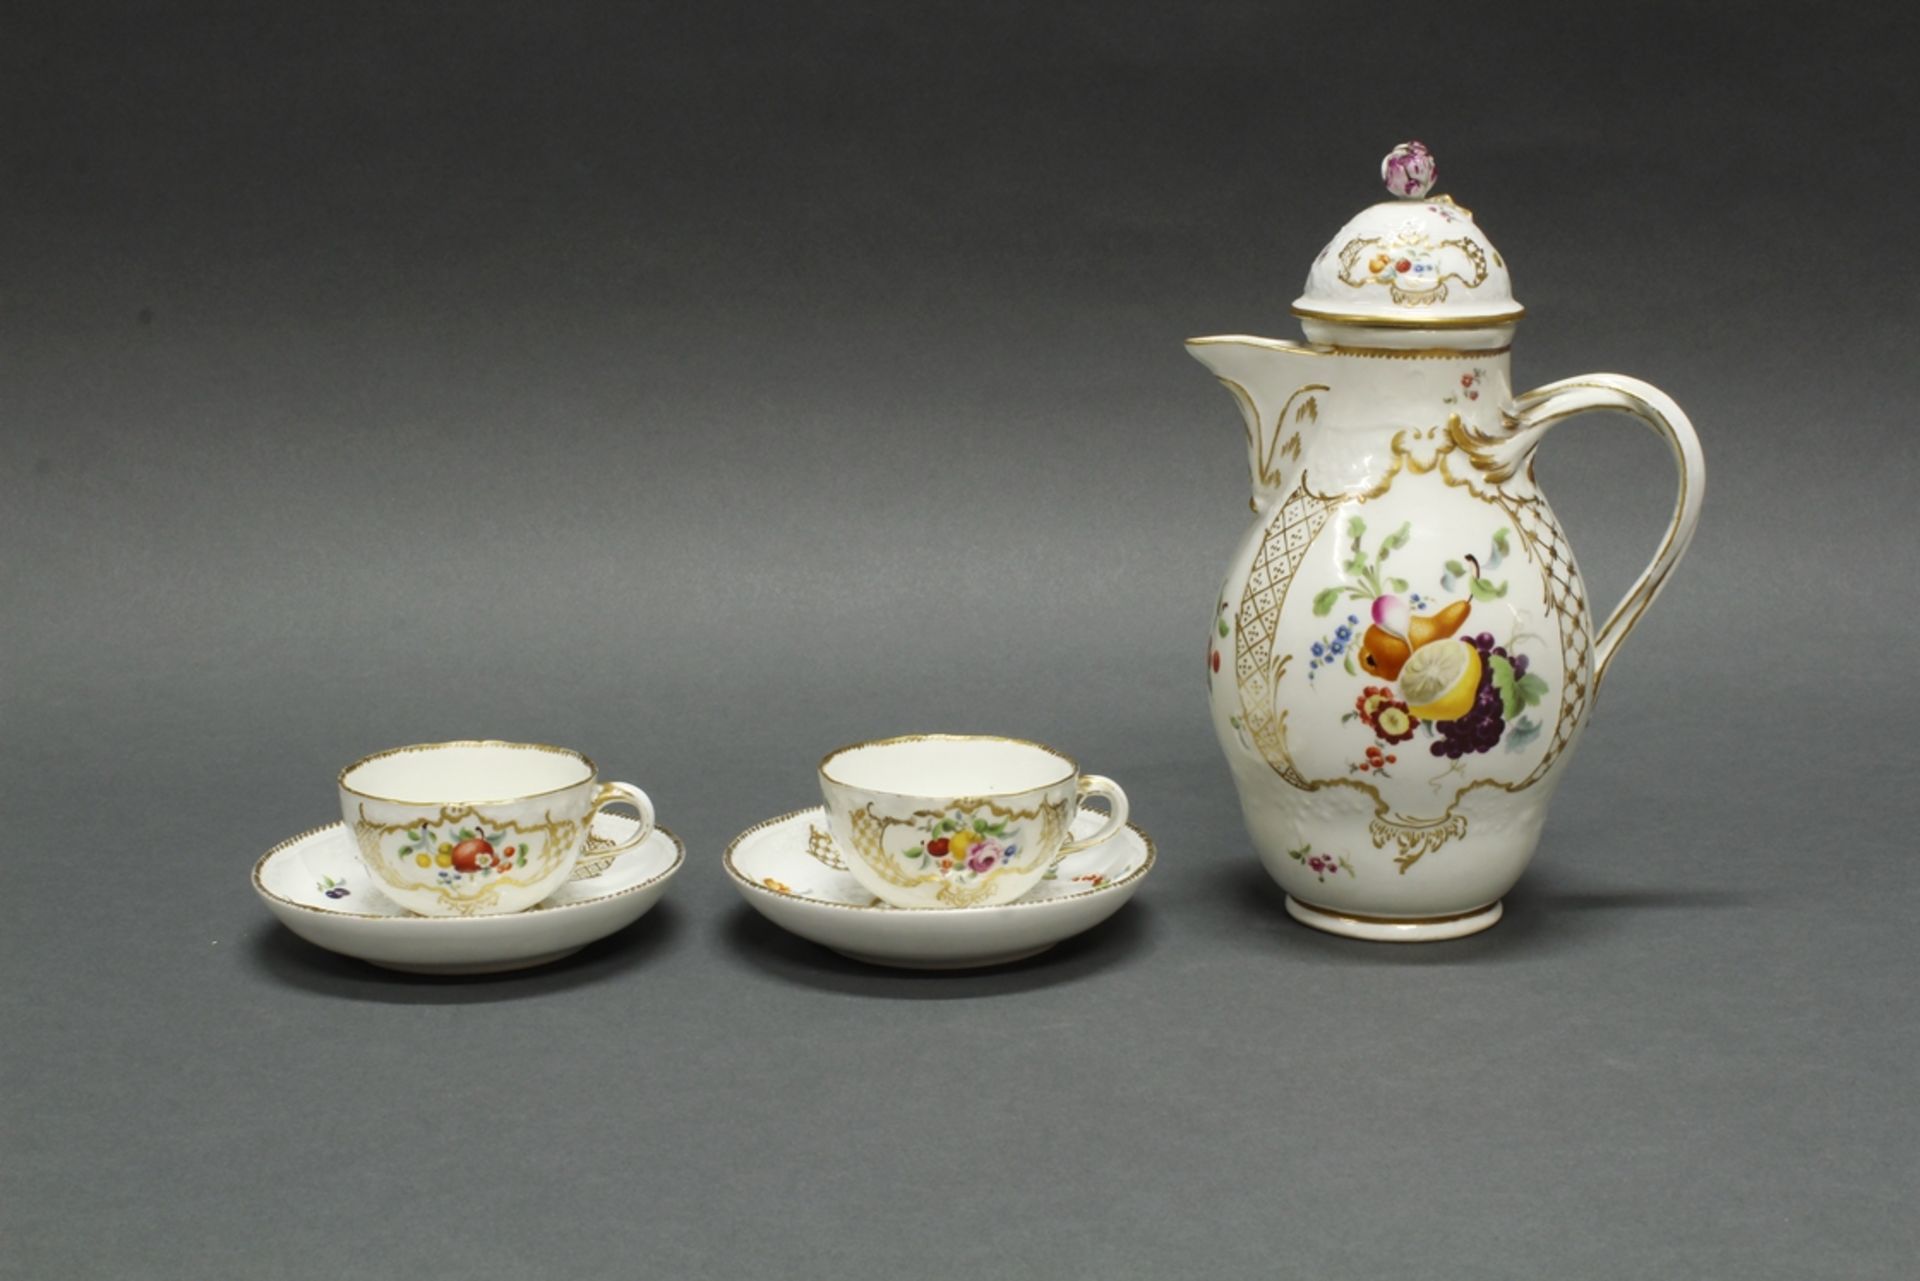 Kaffeekanne, 2 Tassen mit Untertassen, Meissen, Schwertermarke, um 1765, Reliefdekor mit Blüten, Fr